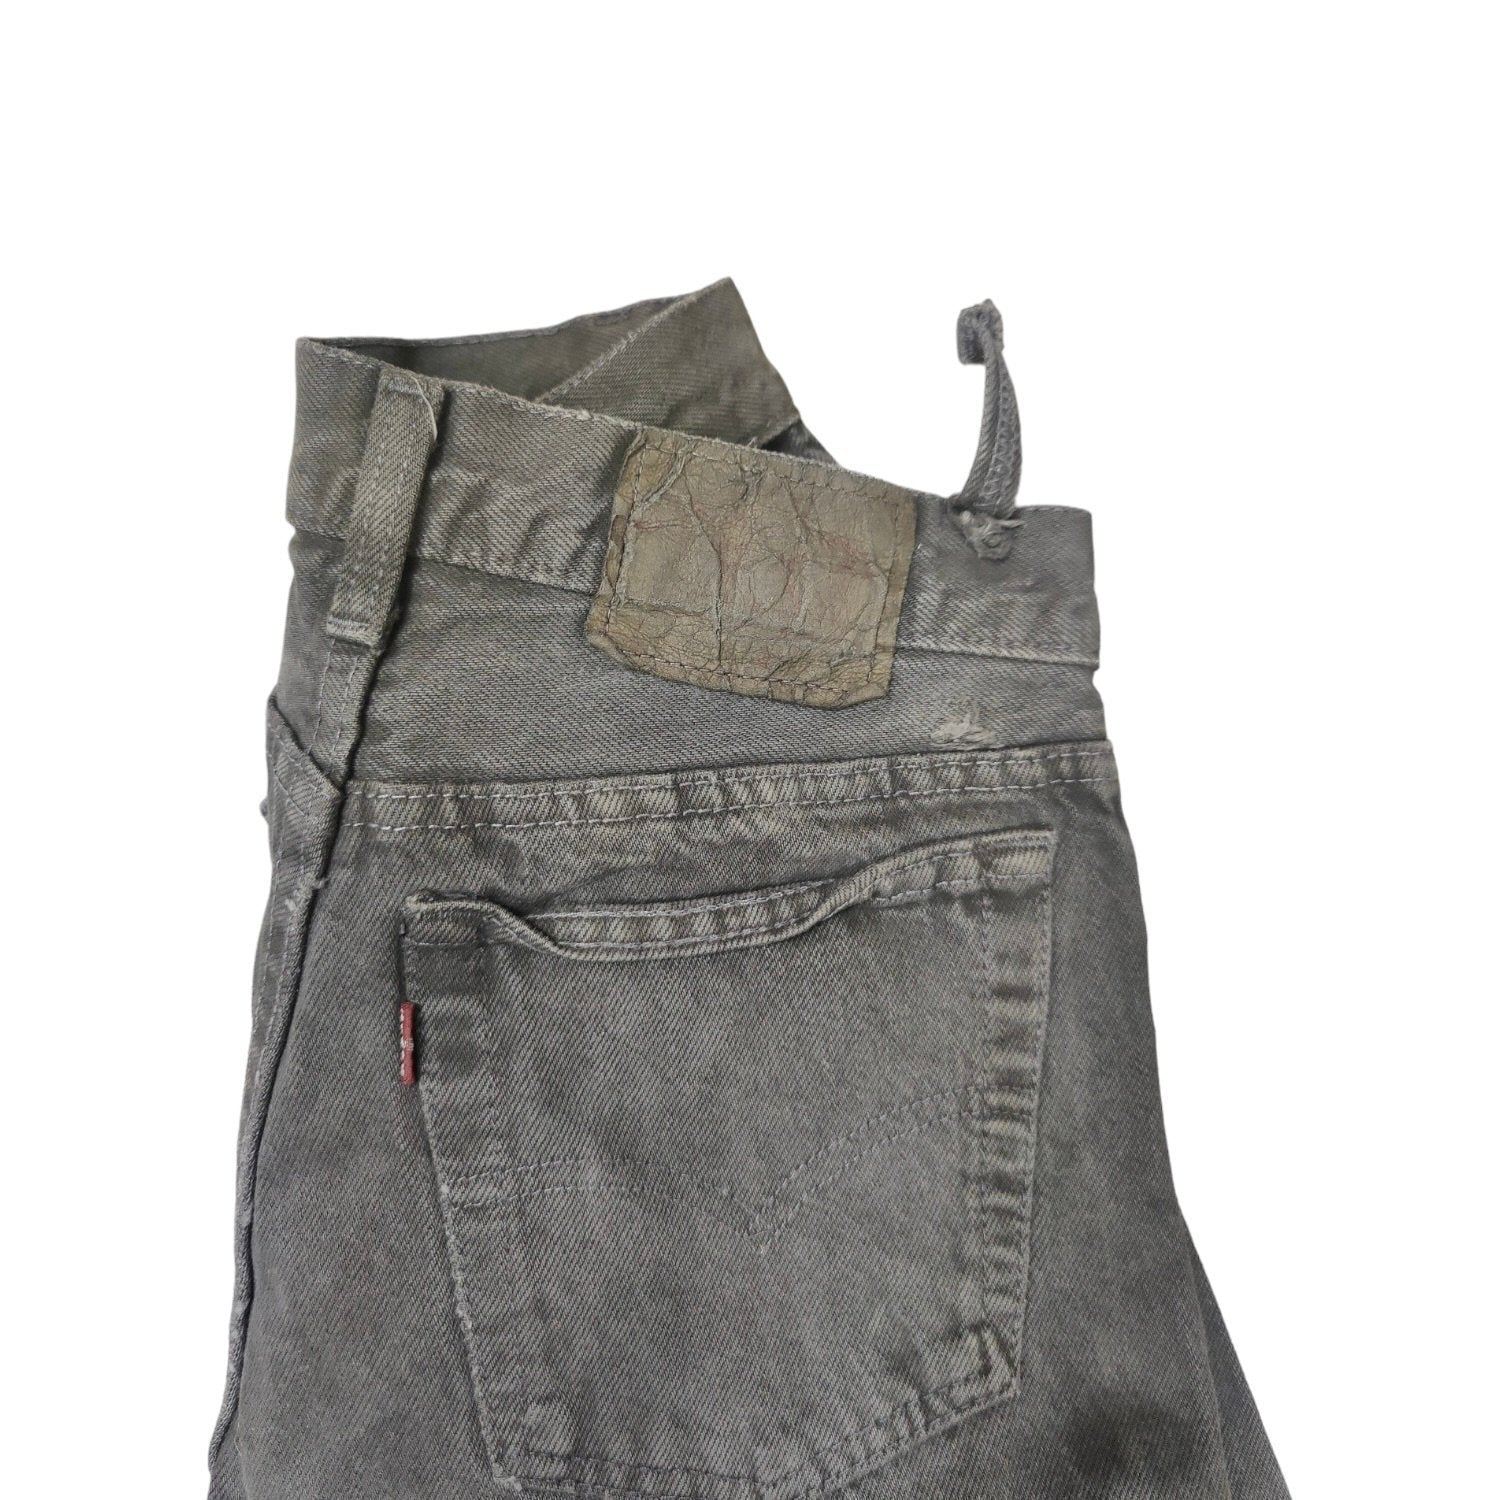 Vintage Levis Grey Jeans (W27/L30)